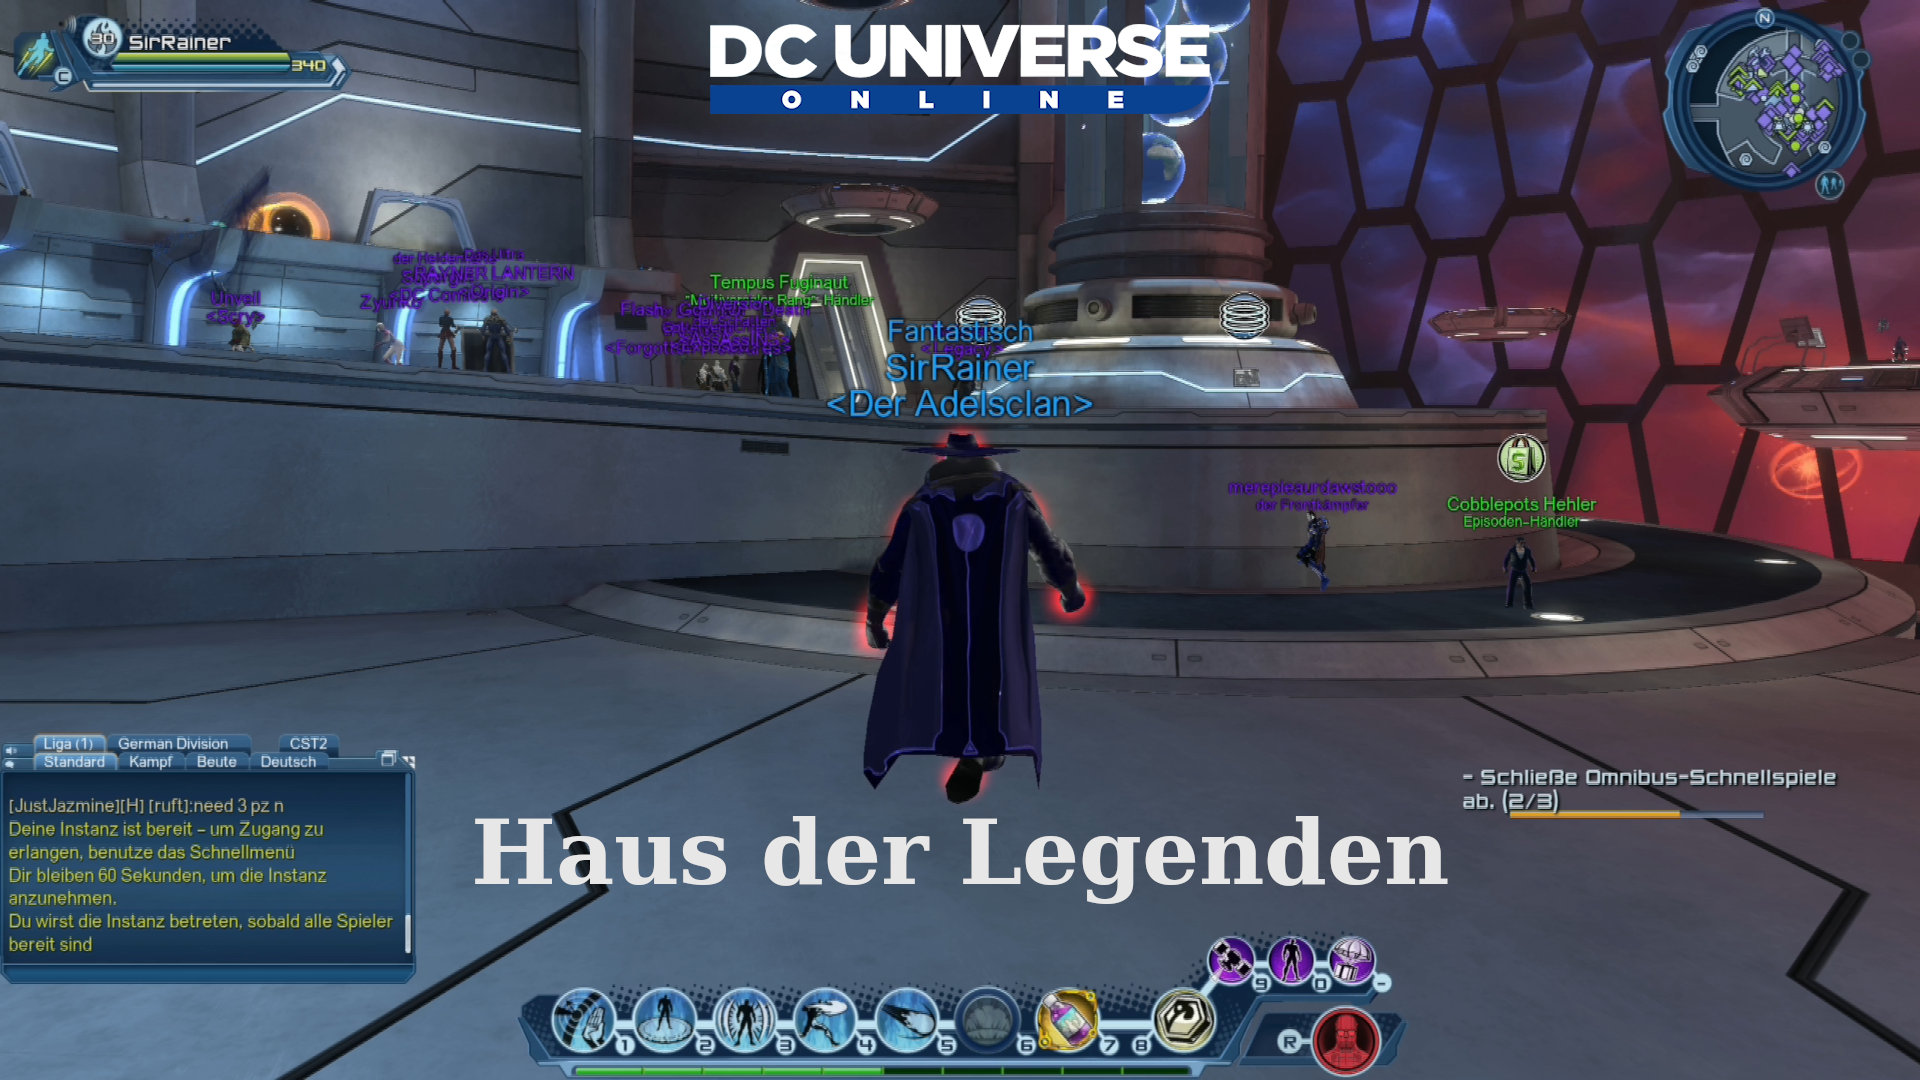 DC Universe Online - Haus der Legenden